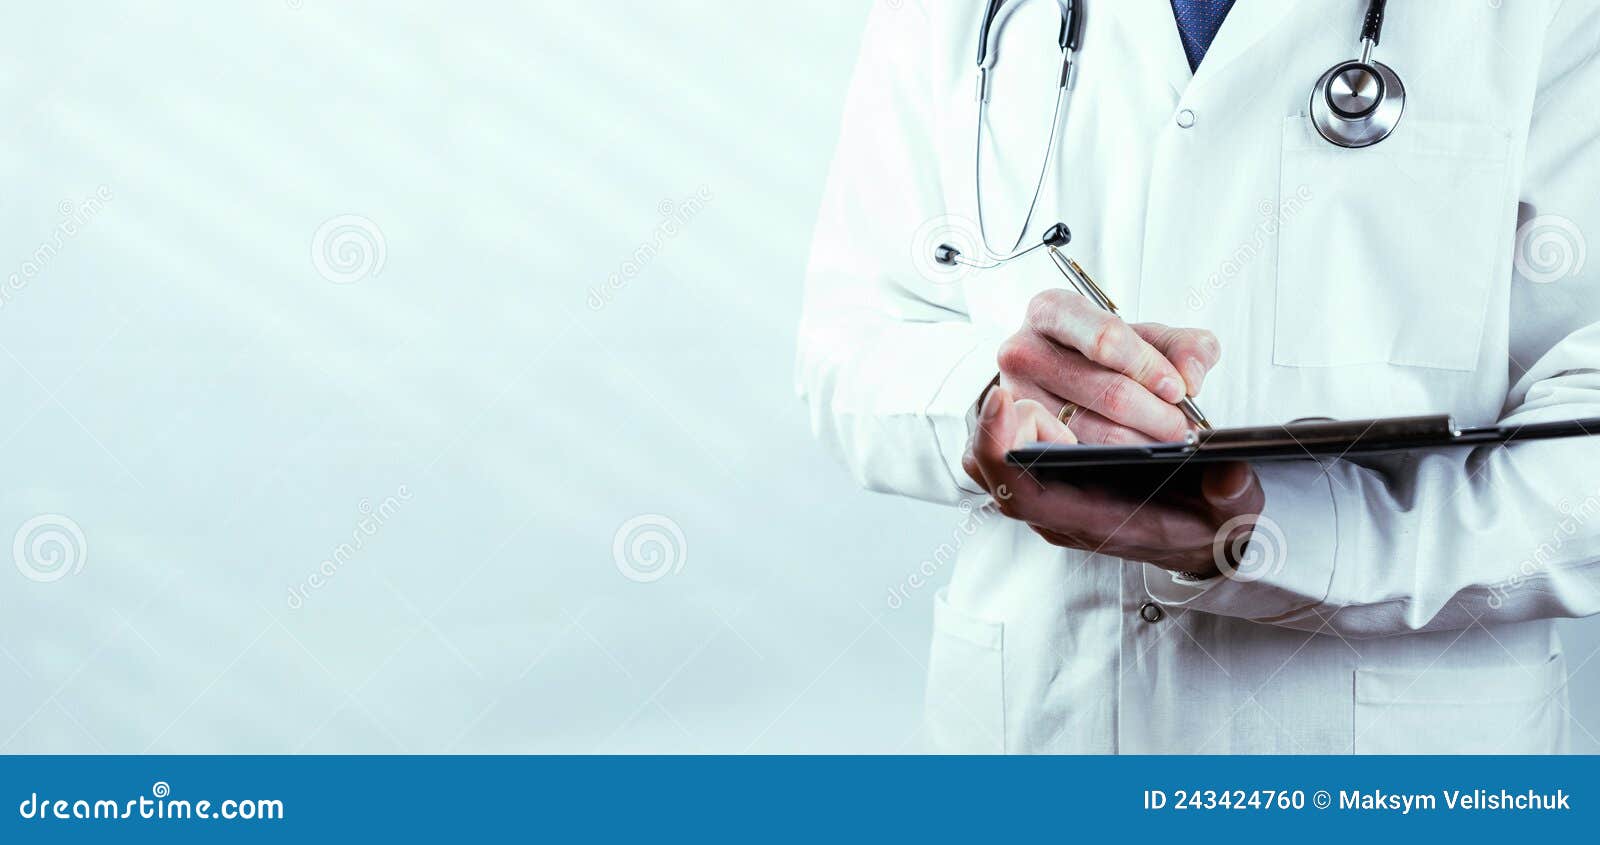 desenho de doutora com fixa medica de paciente nas mãos [download